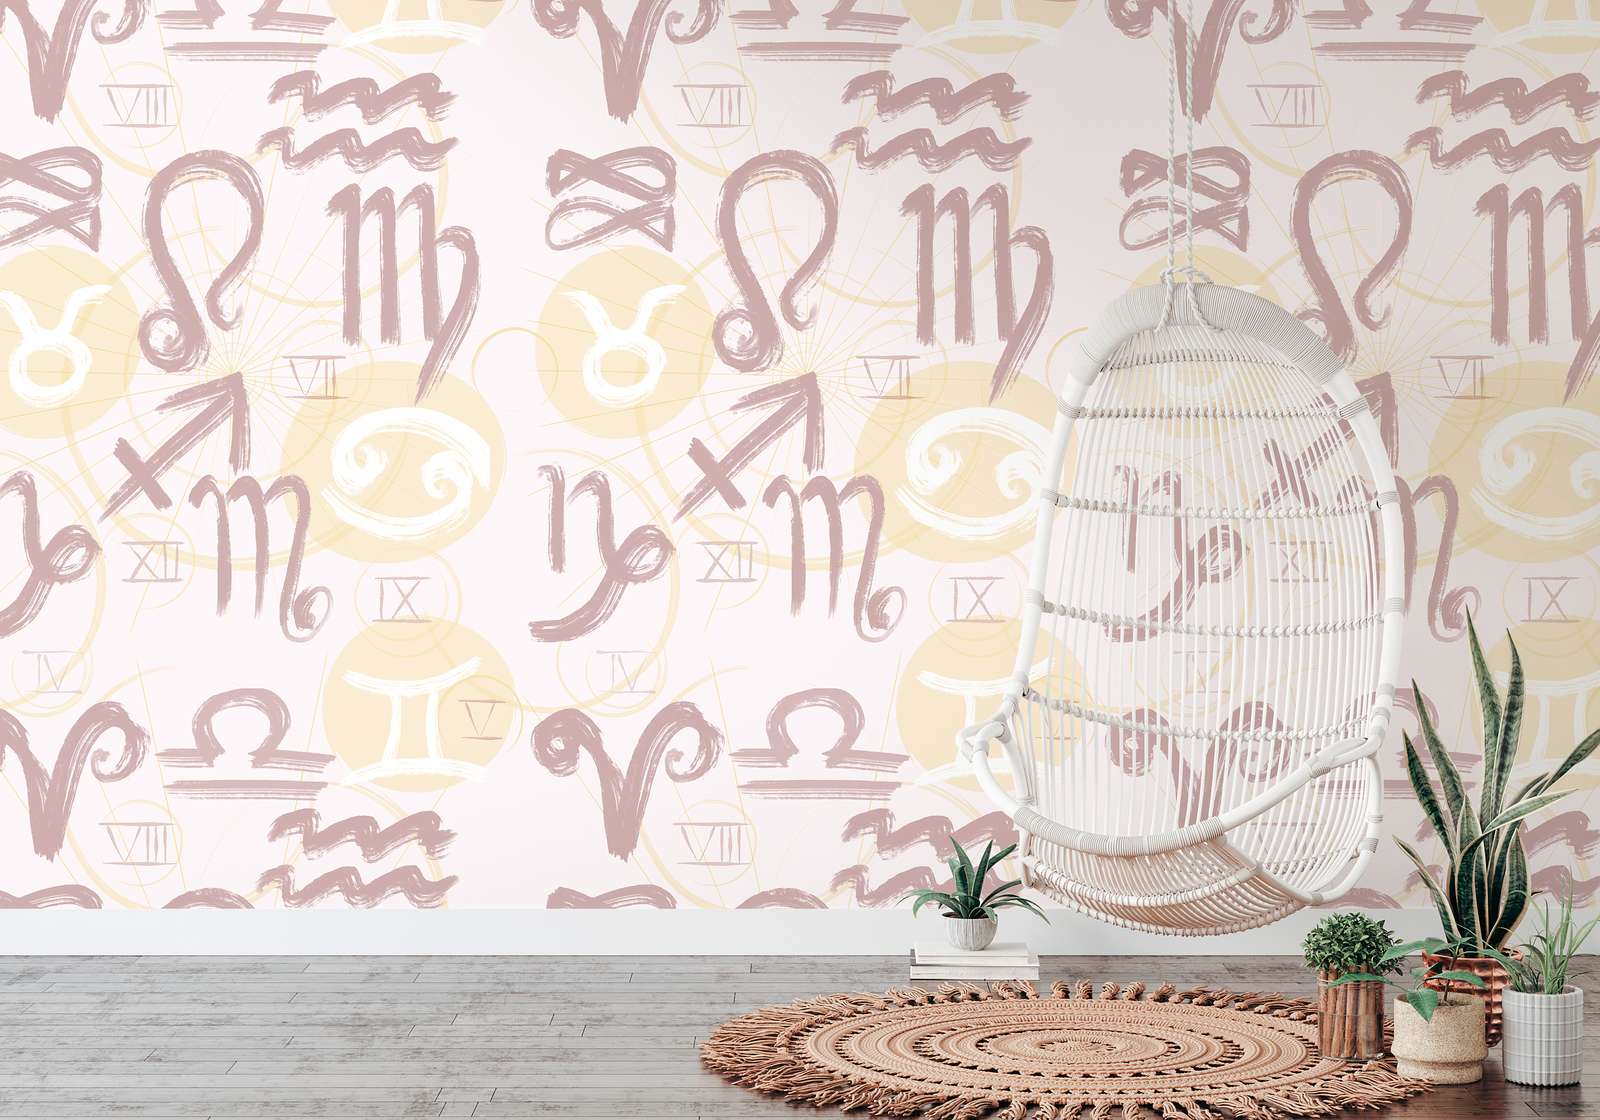             Papier peint avec symboles du zodiaque et chiffres romains - crème, jaune, rose
        